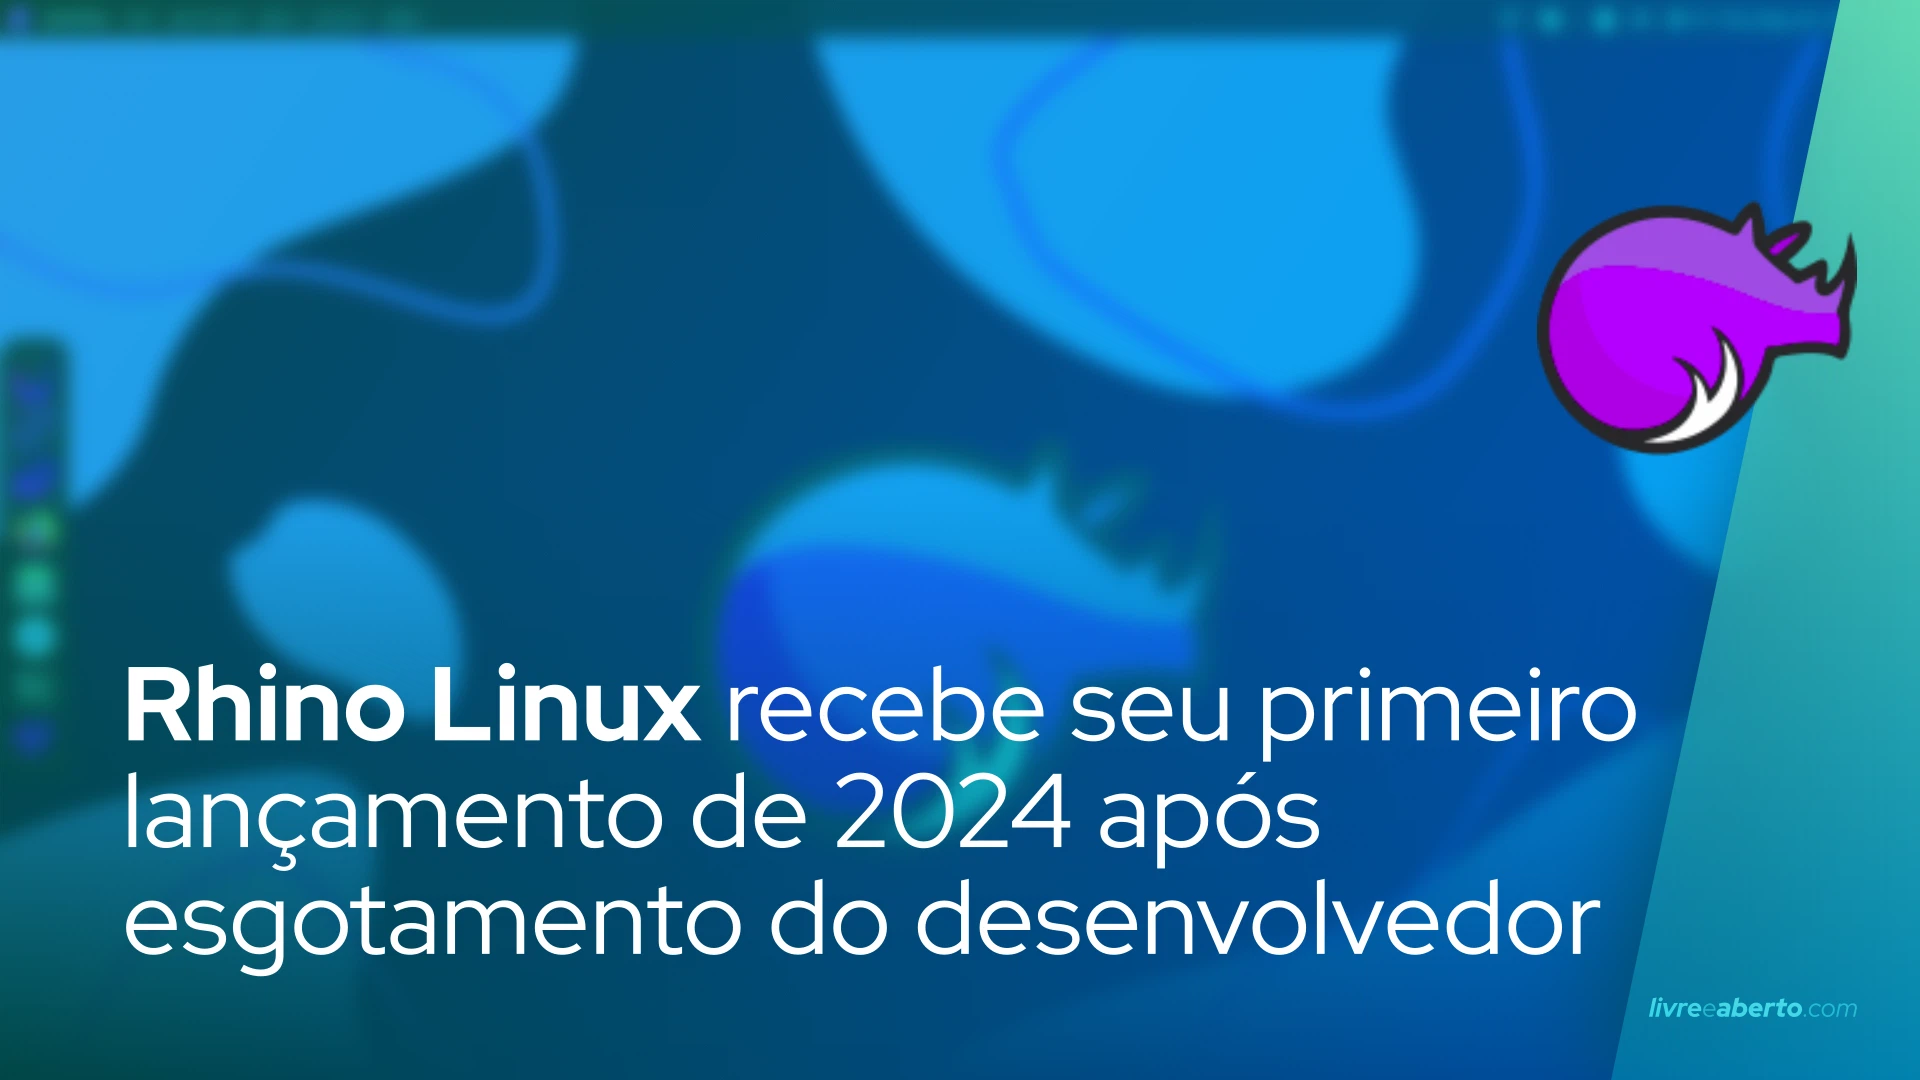 Rhino Linux recebe seu primeiro lançamento de 2024 após esgotamento do desenvolvedor